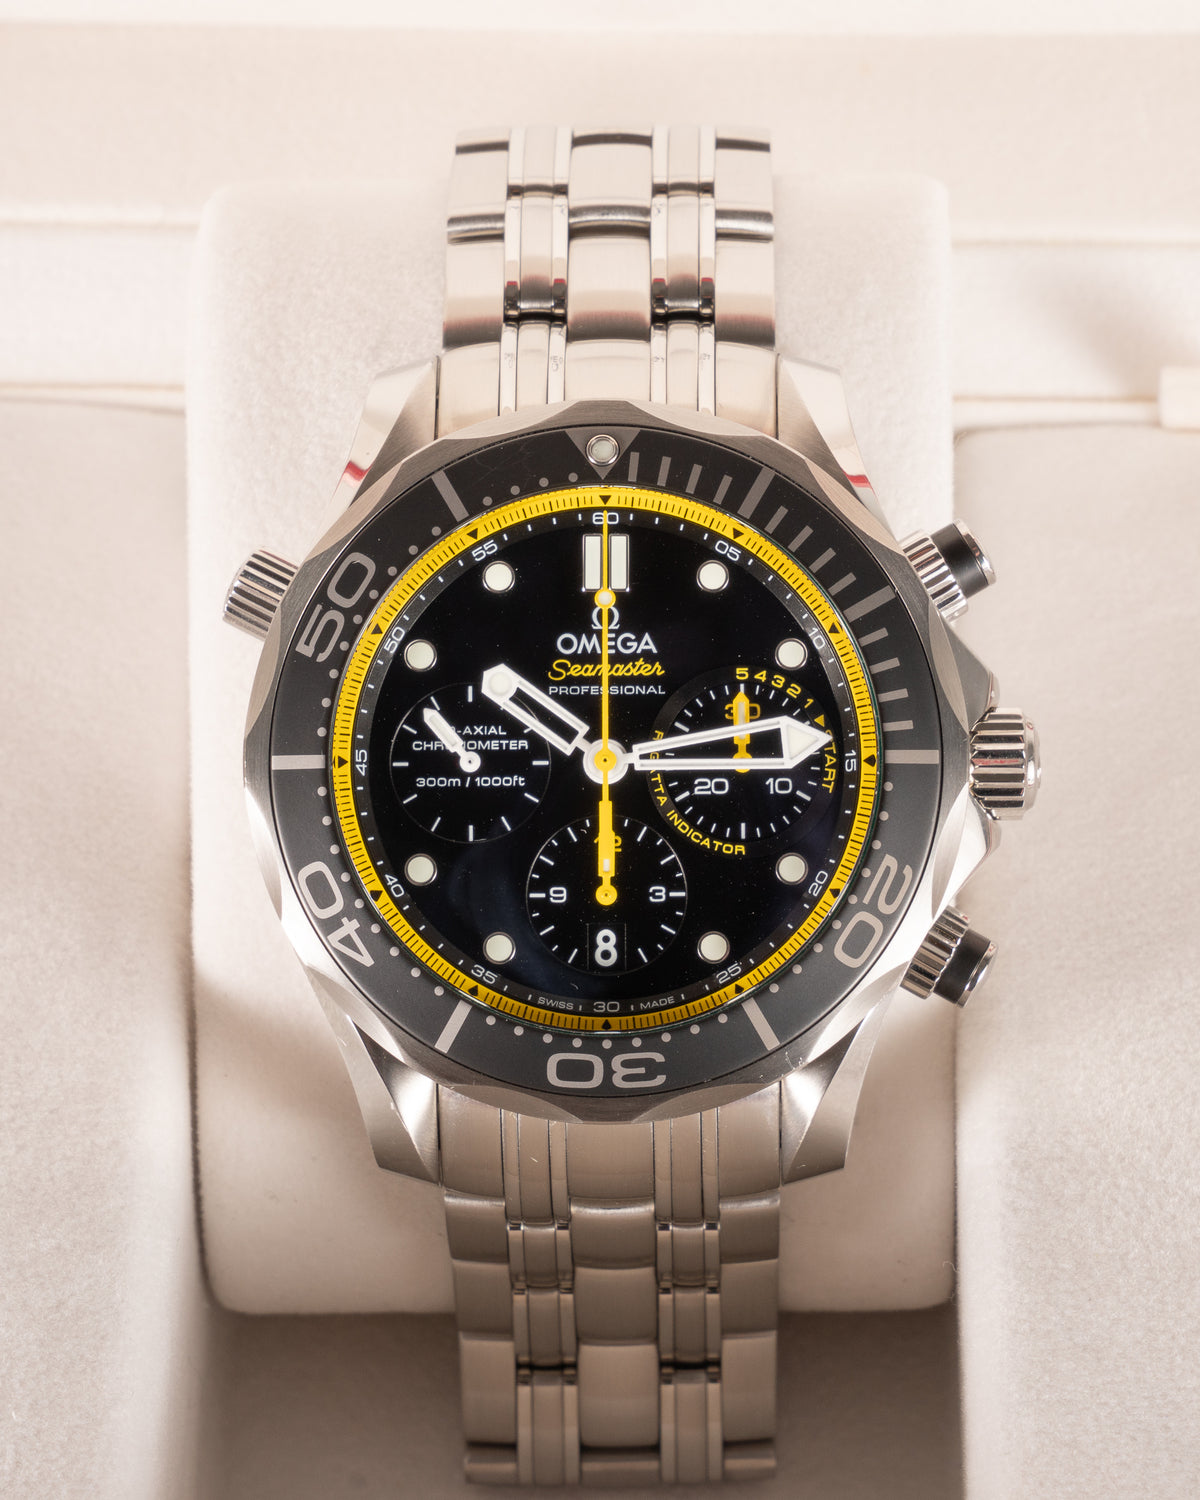 Omega Seamaster Diver 300 M 212.30.44.50.01.002 Regatta Yellow 2013 44mm